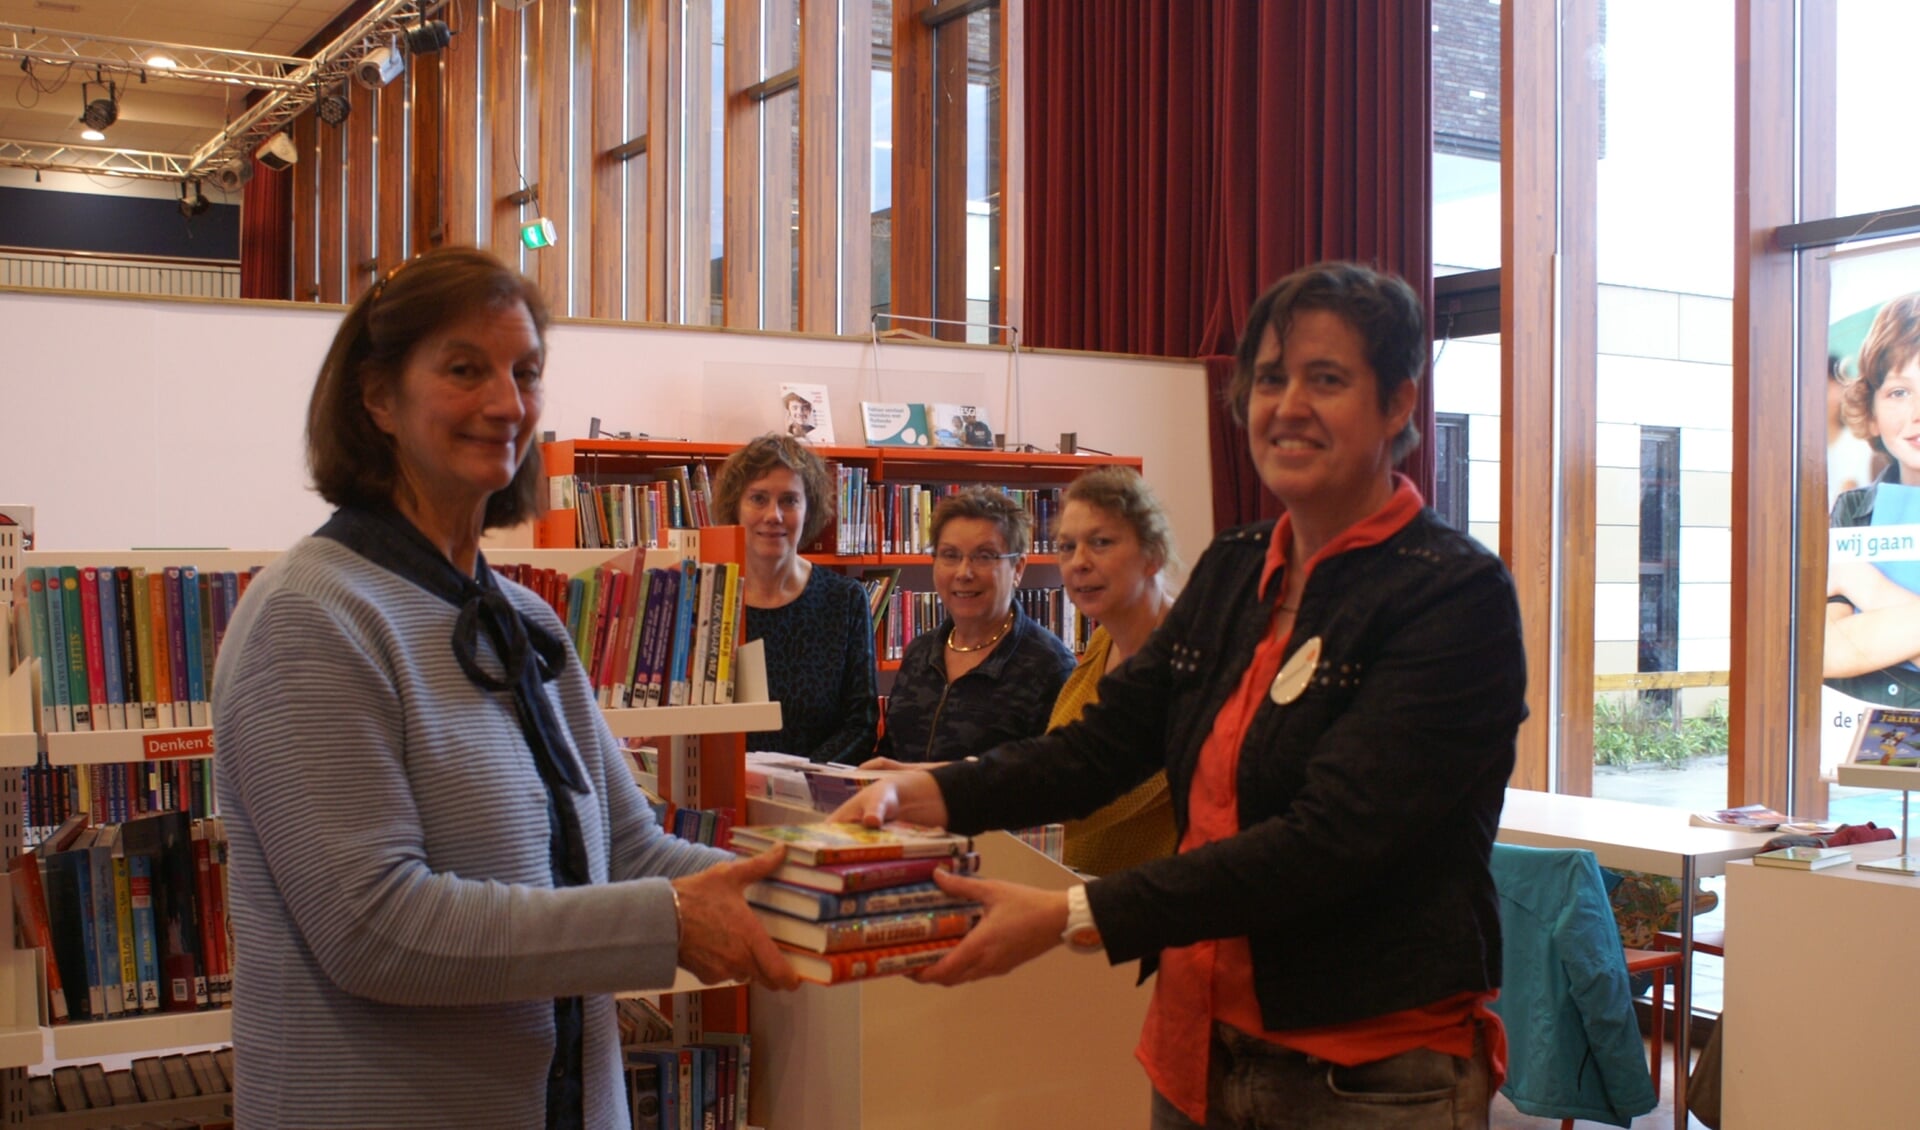 16 nieuwe kinderboeken voor jeugdbibliotheek in Reeuwijk.